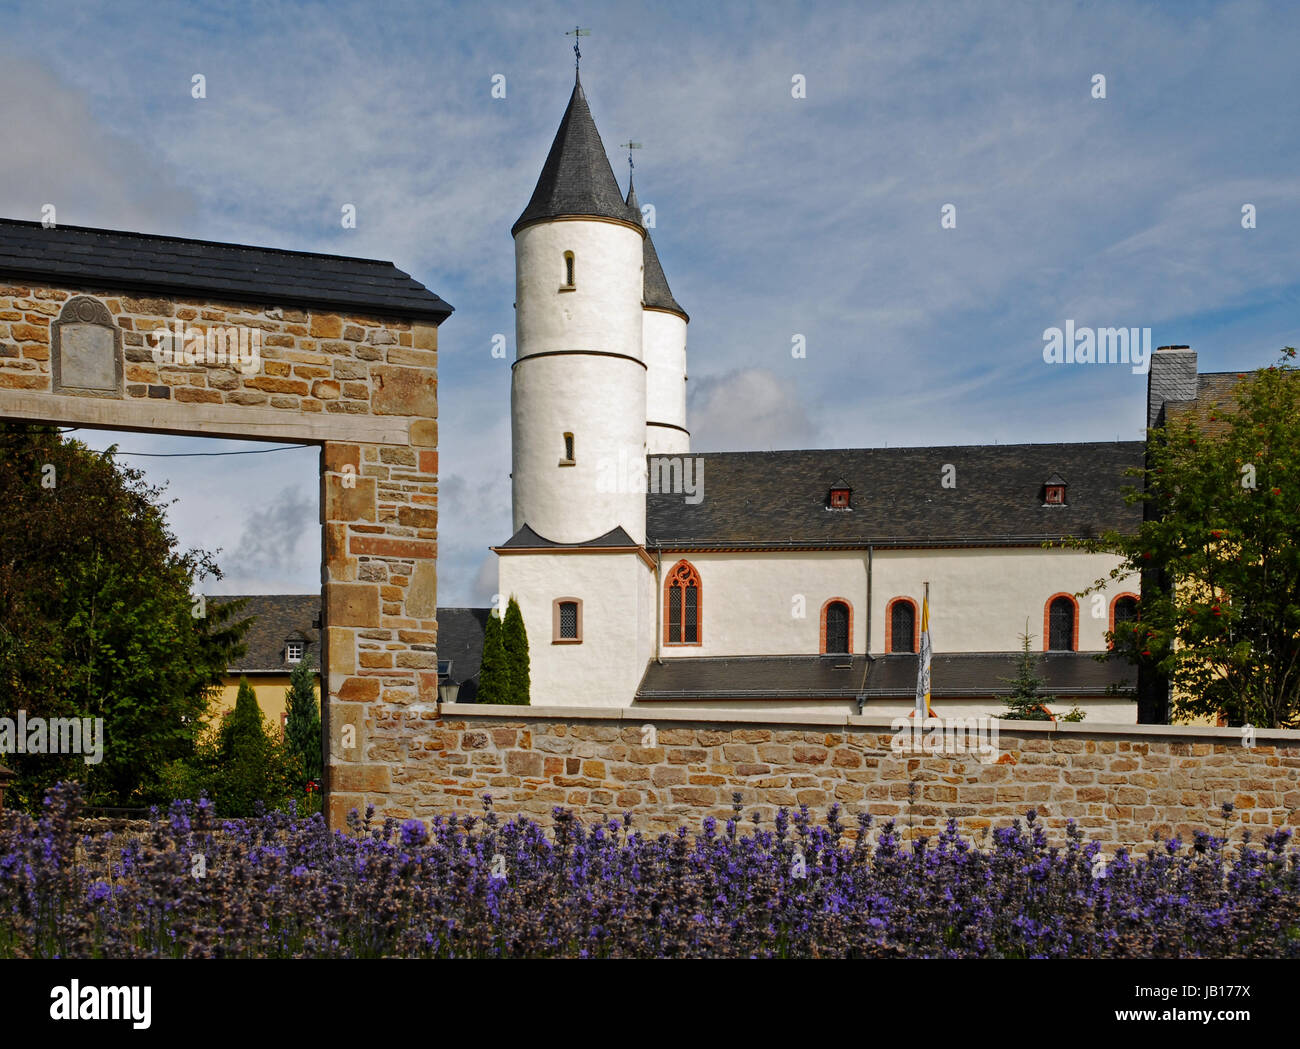 Kloster steinfeld Foto de stock